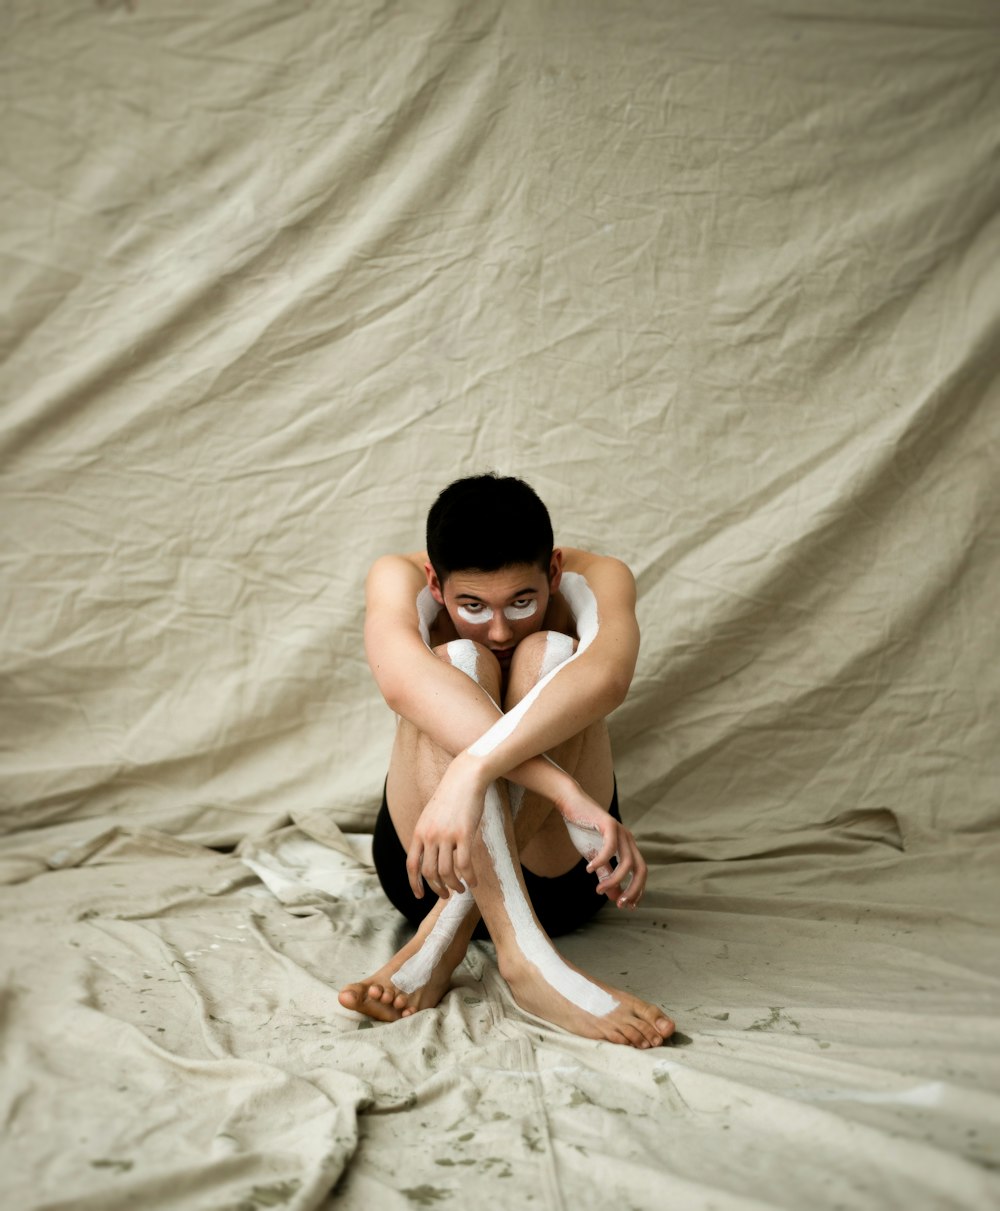 Mann sitzt auf braunem Textil und zeigt Körperbemalung